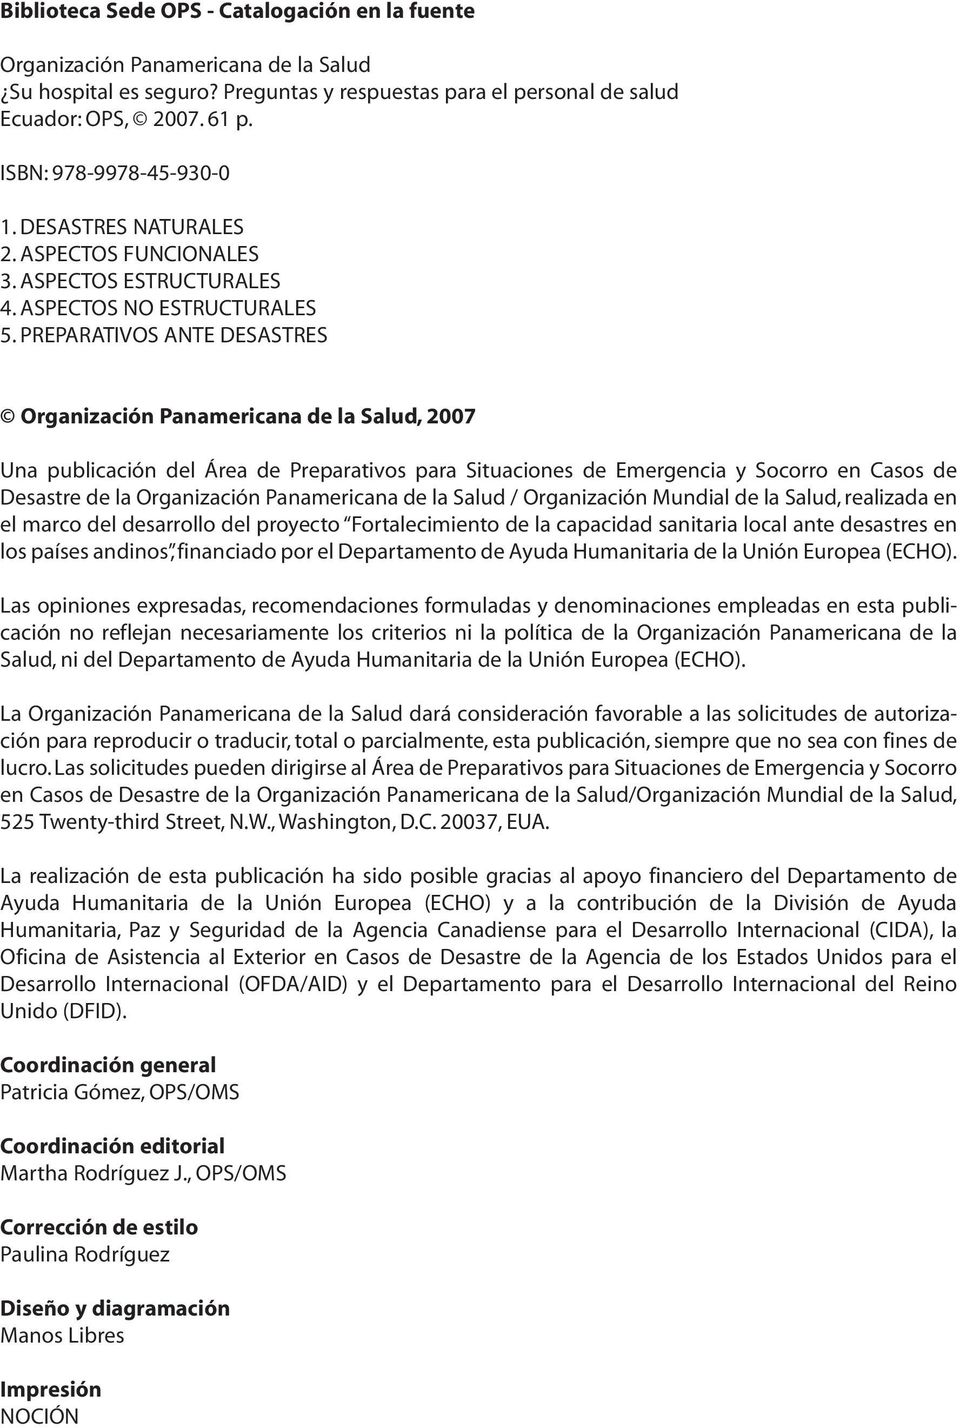 PREPARATIVOS ANTE DESASTRES Organización Panamericana de la Salud, 2007 Una publicación del Área de Preparativos para Situaciones de Emergencia y Socorro en Casos de Desastre de la Organización